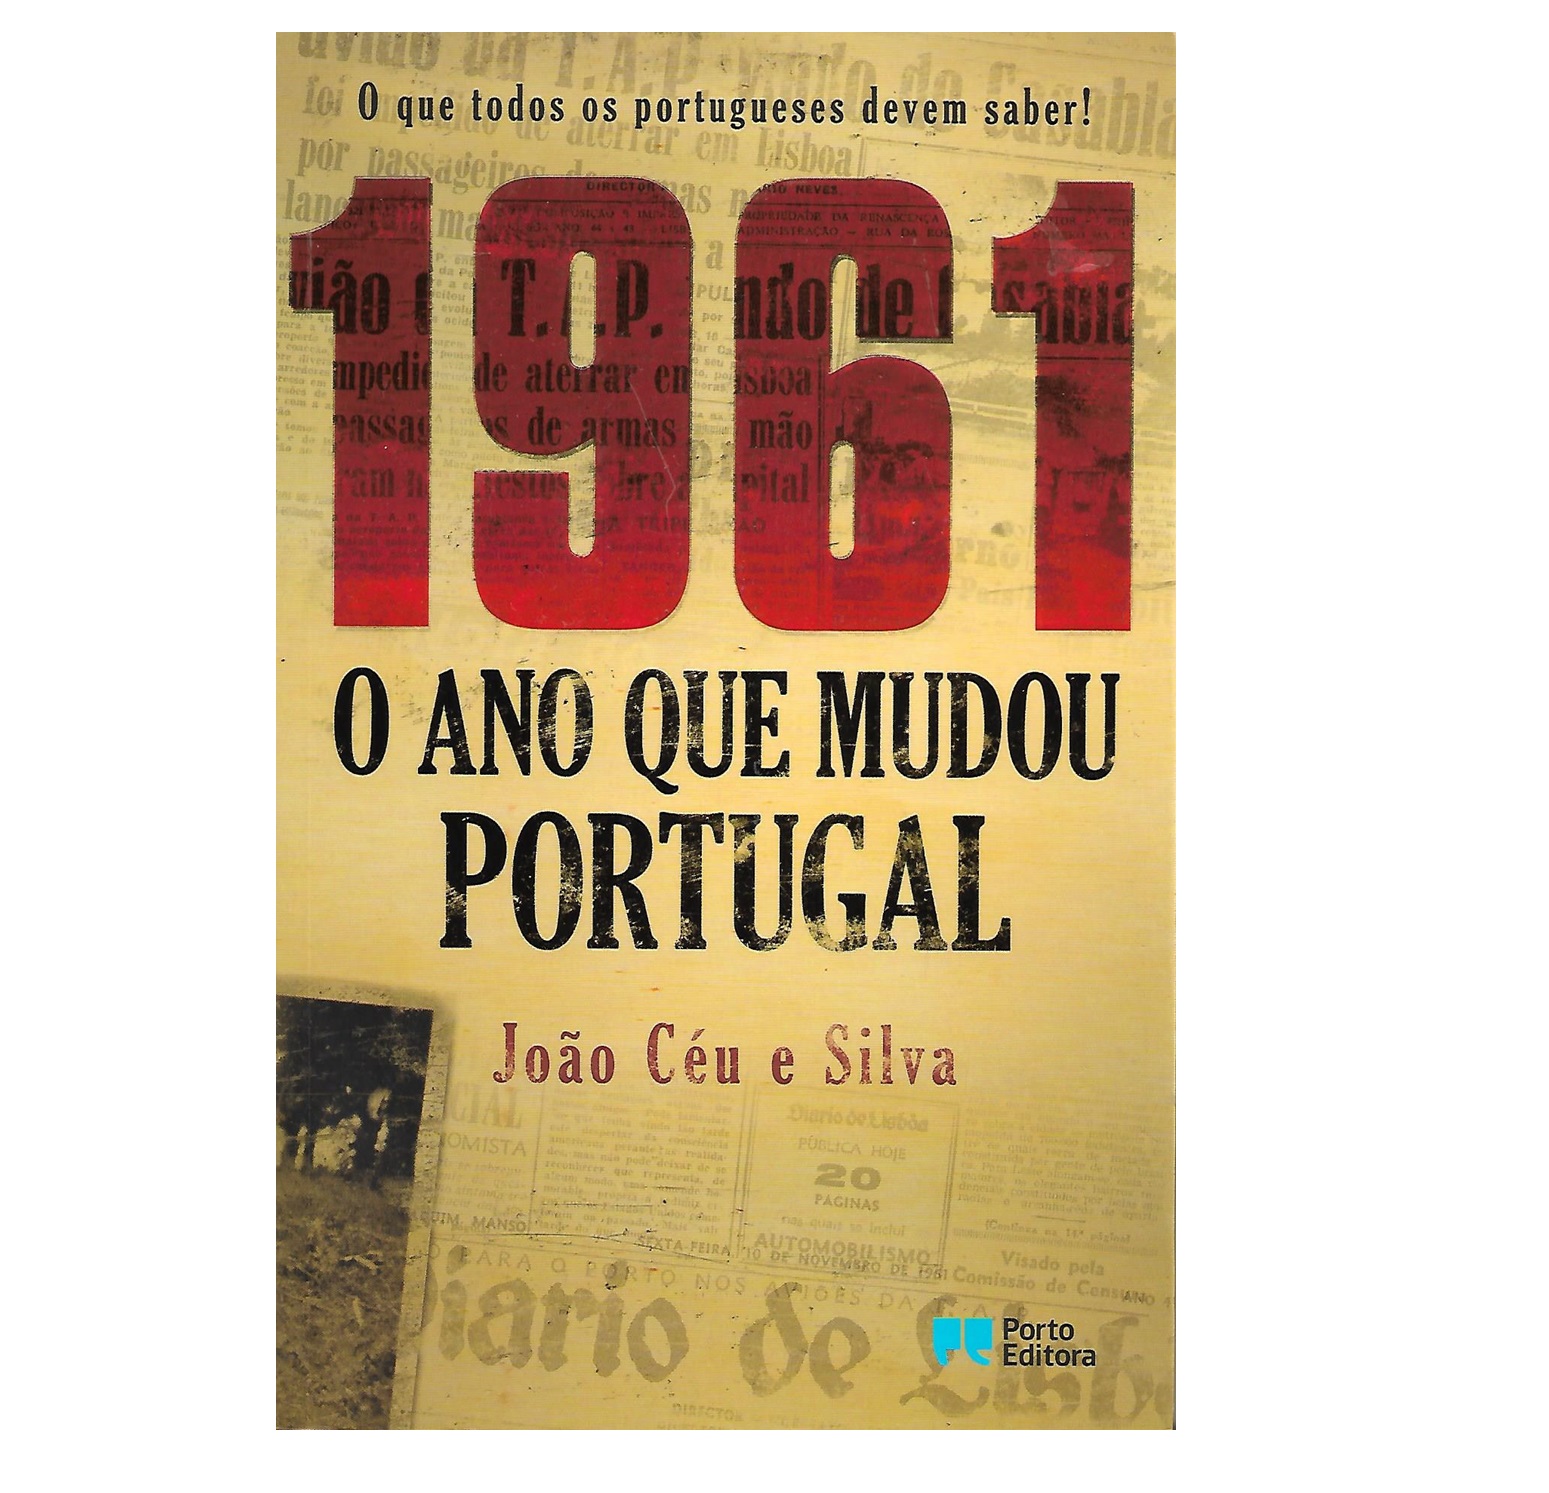 1961: O ANO QUE MUDOU PORTUGAL